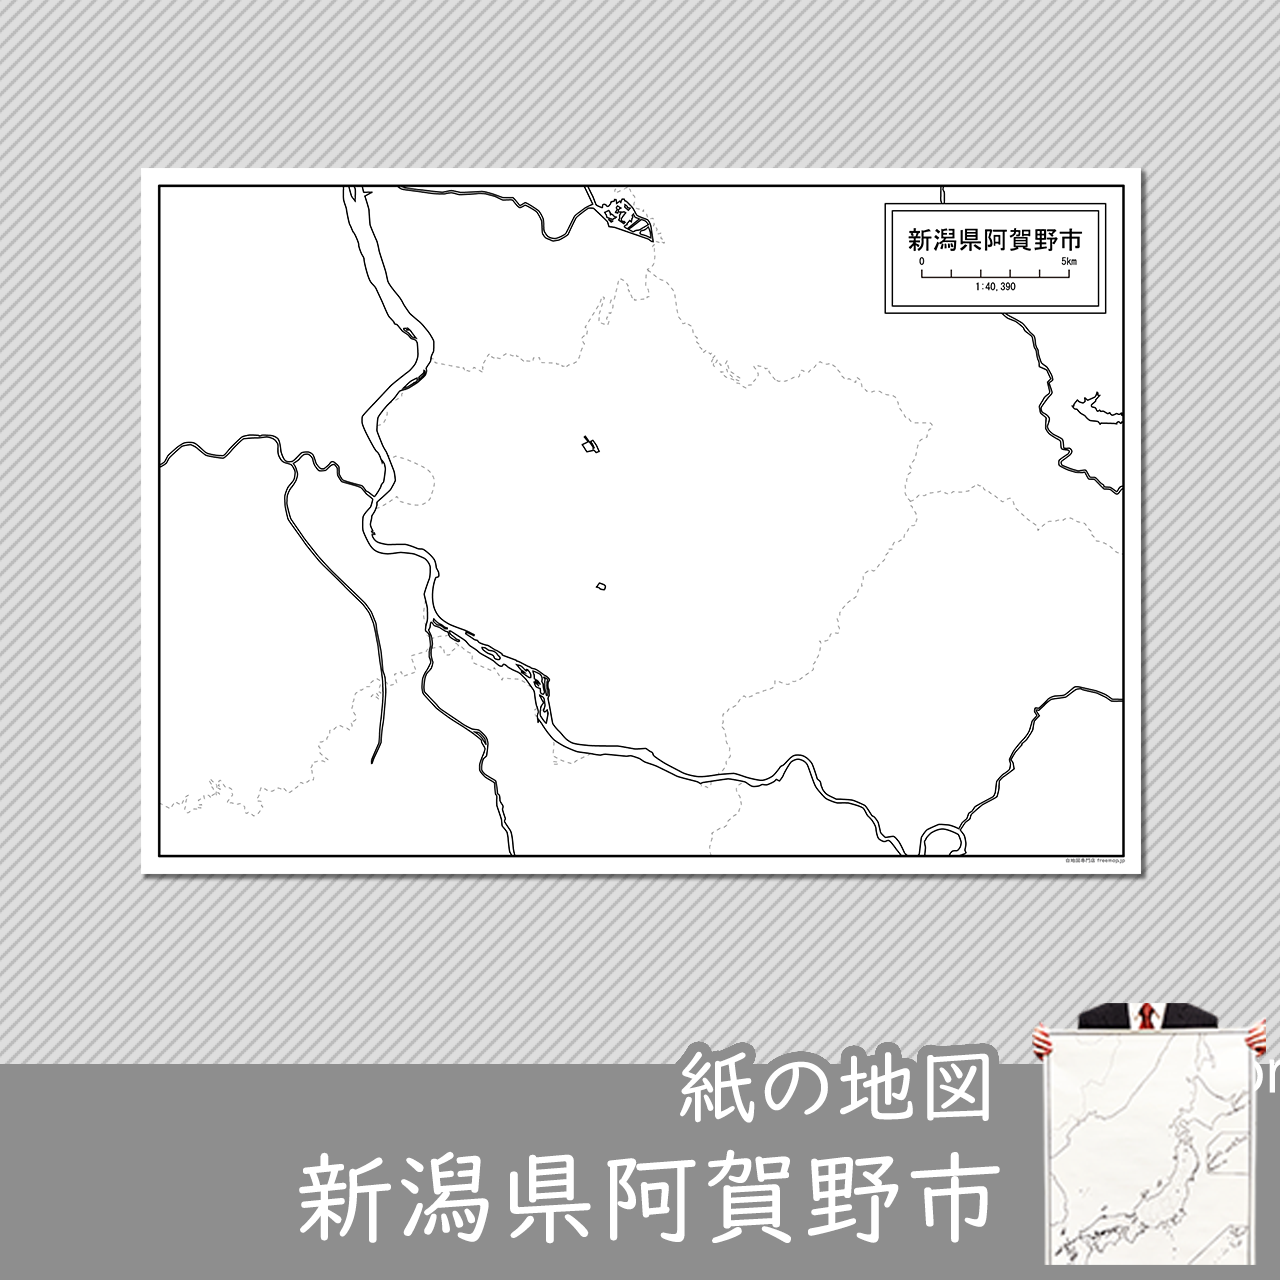 阿賀野市の紙の白地図のサムネイル